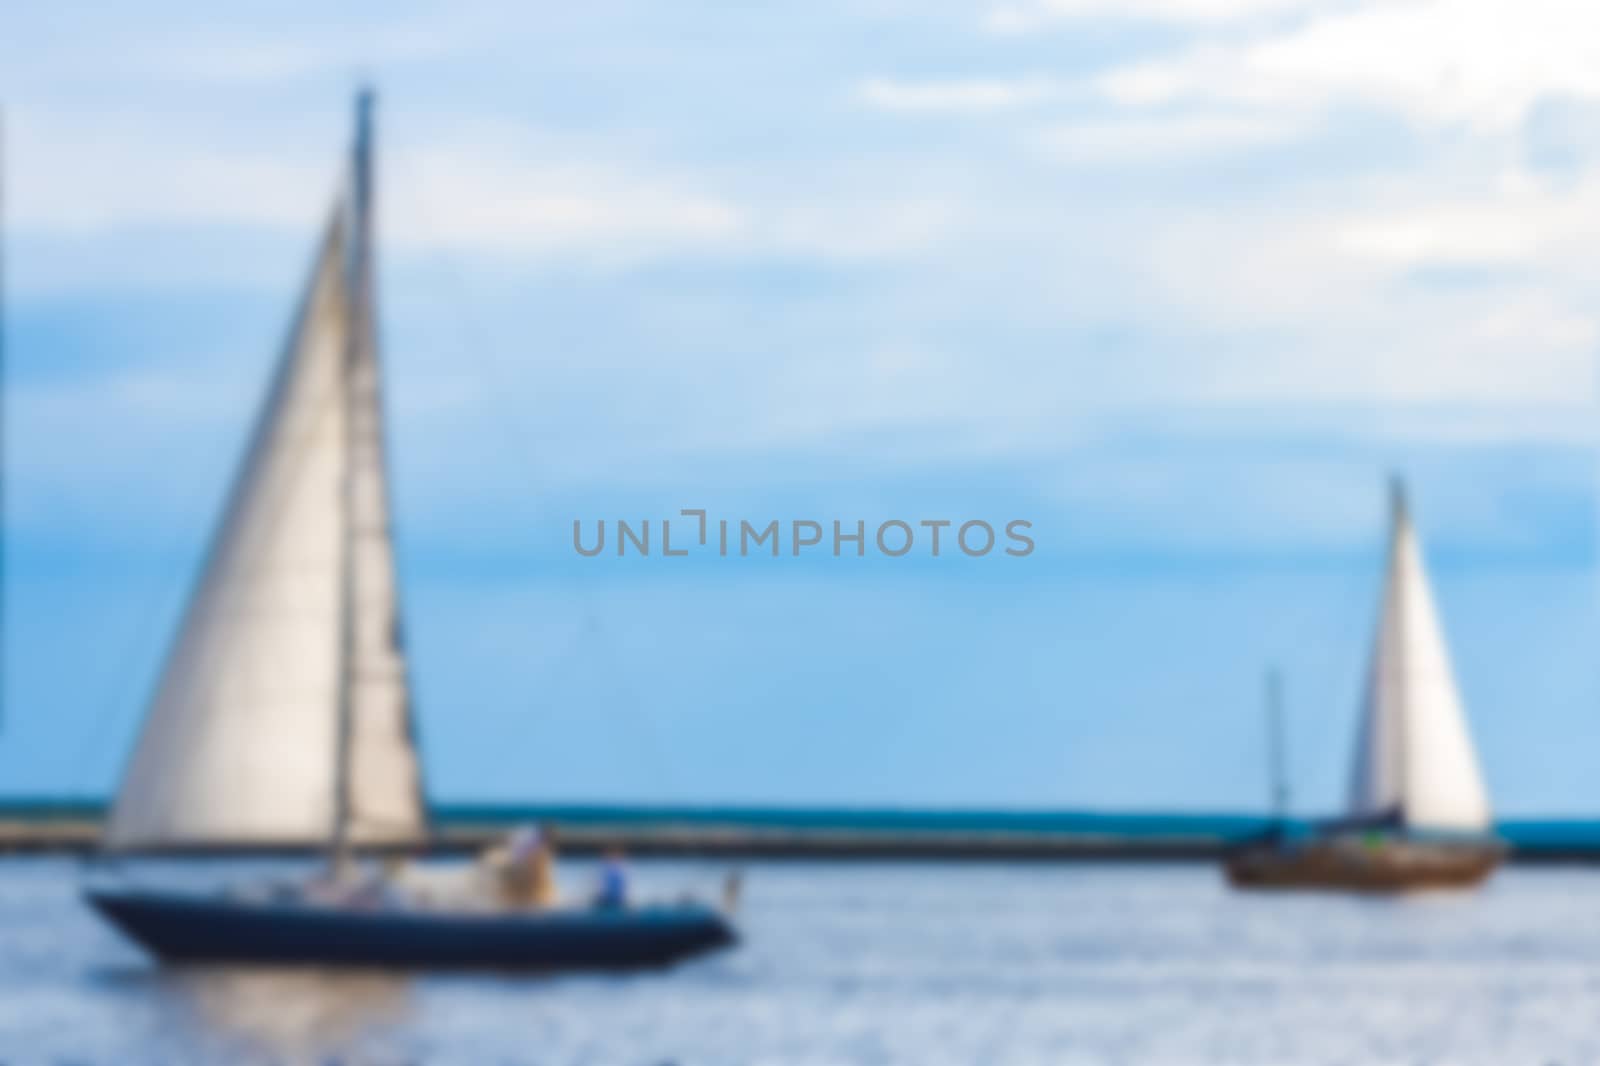 Blue sailboat - soft lens bokeh image. Defocused background